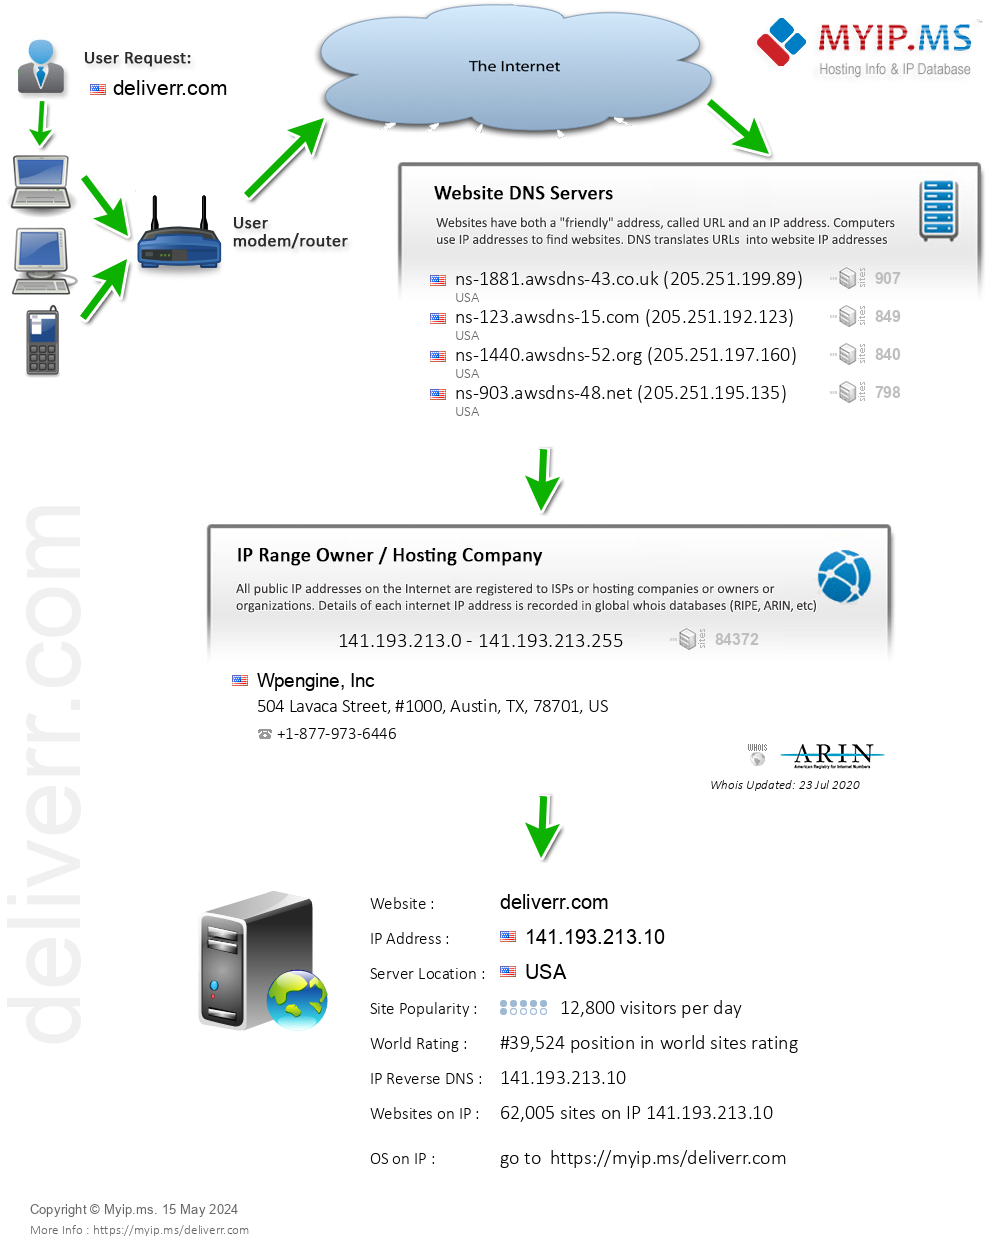 Deliverr.com - Website Hosting Visual IP Diagram